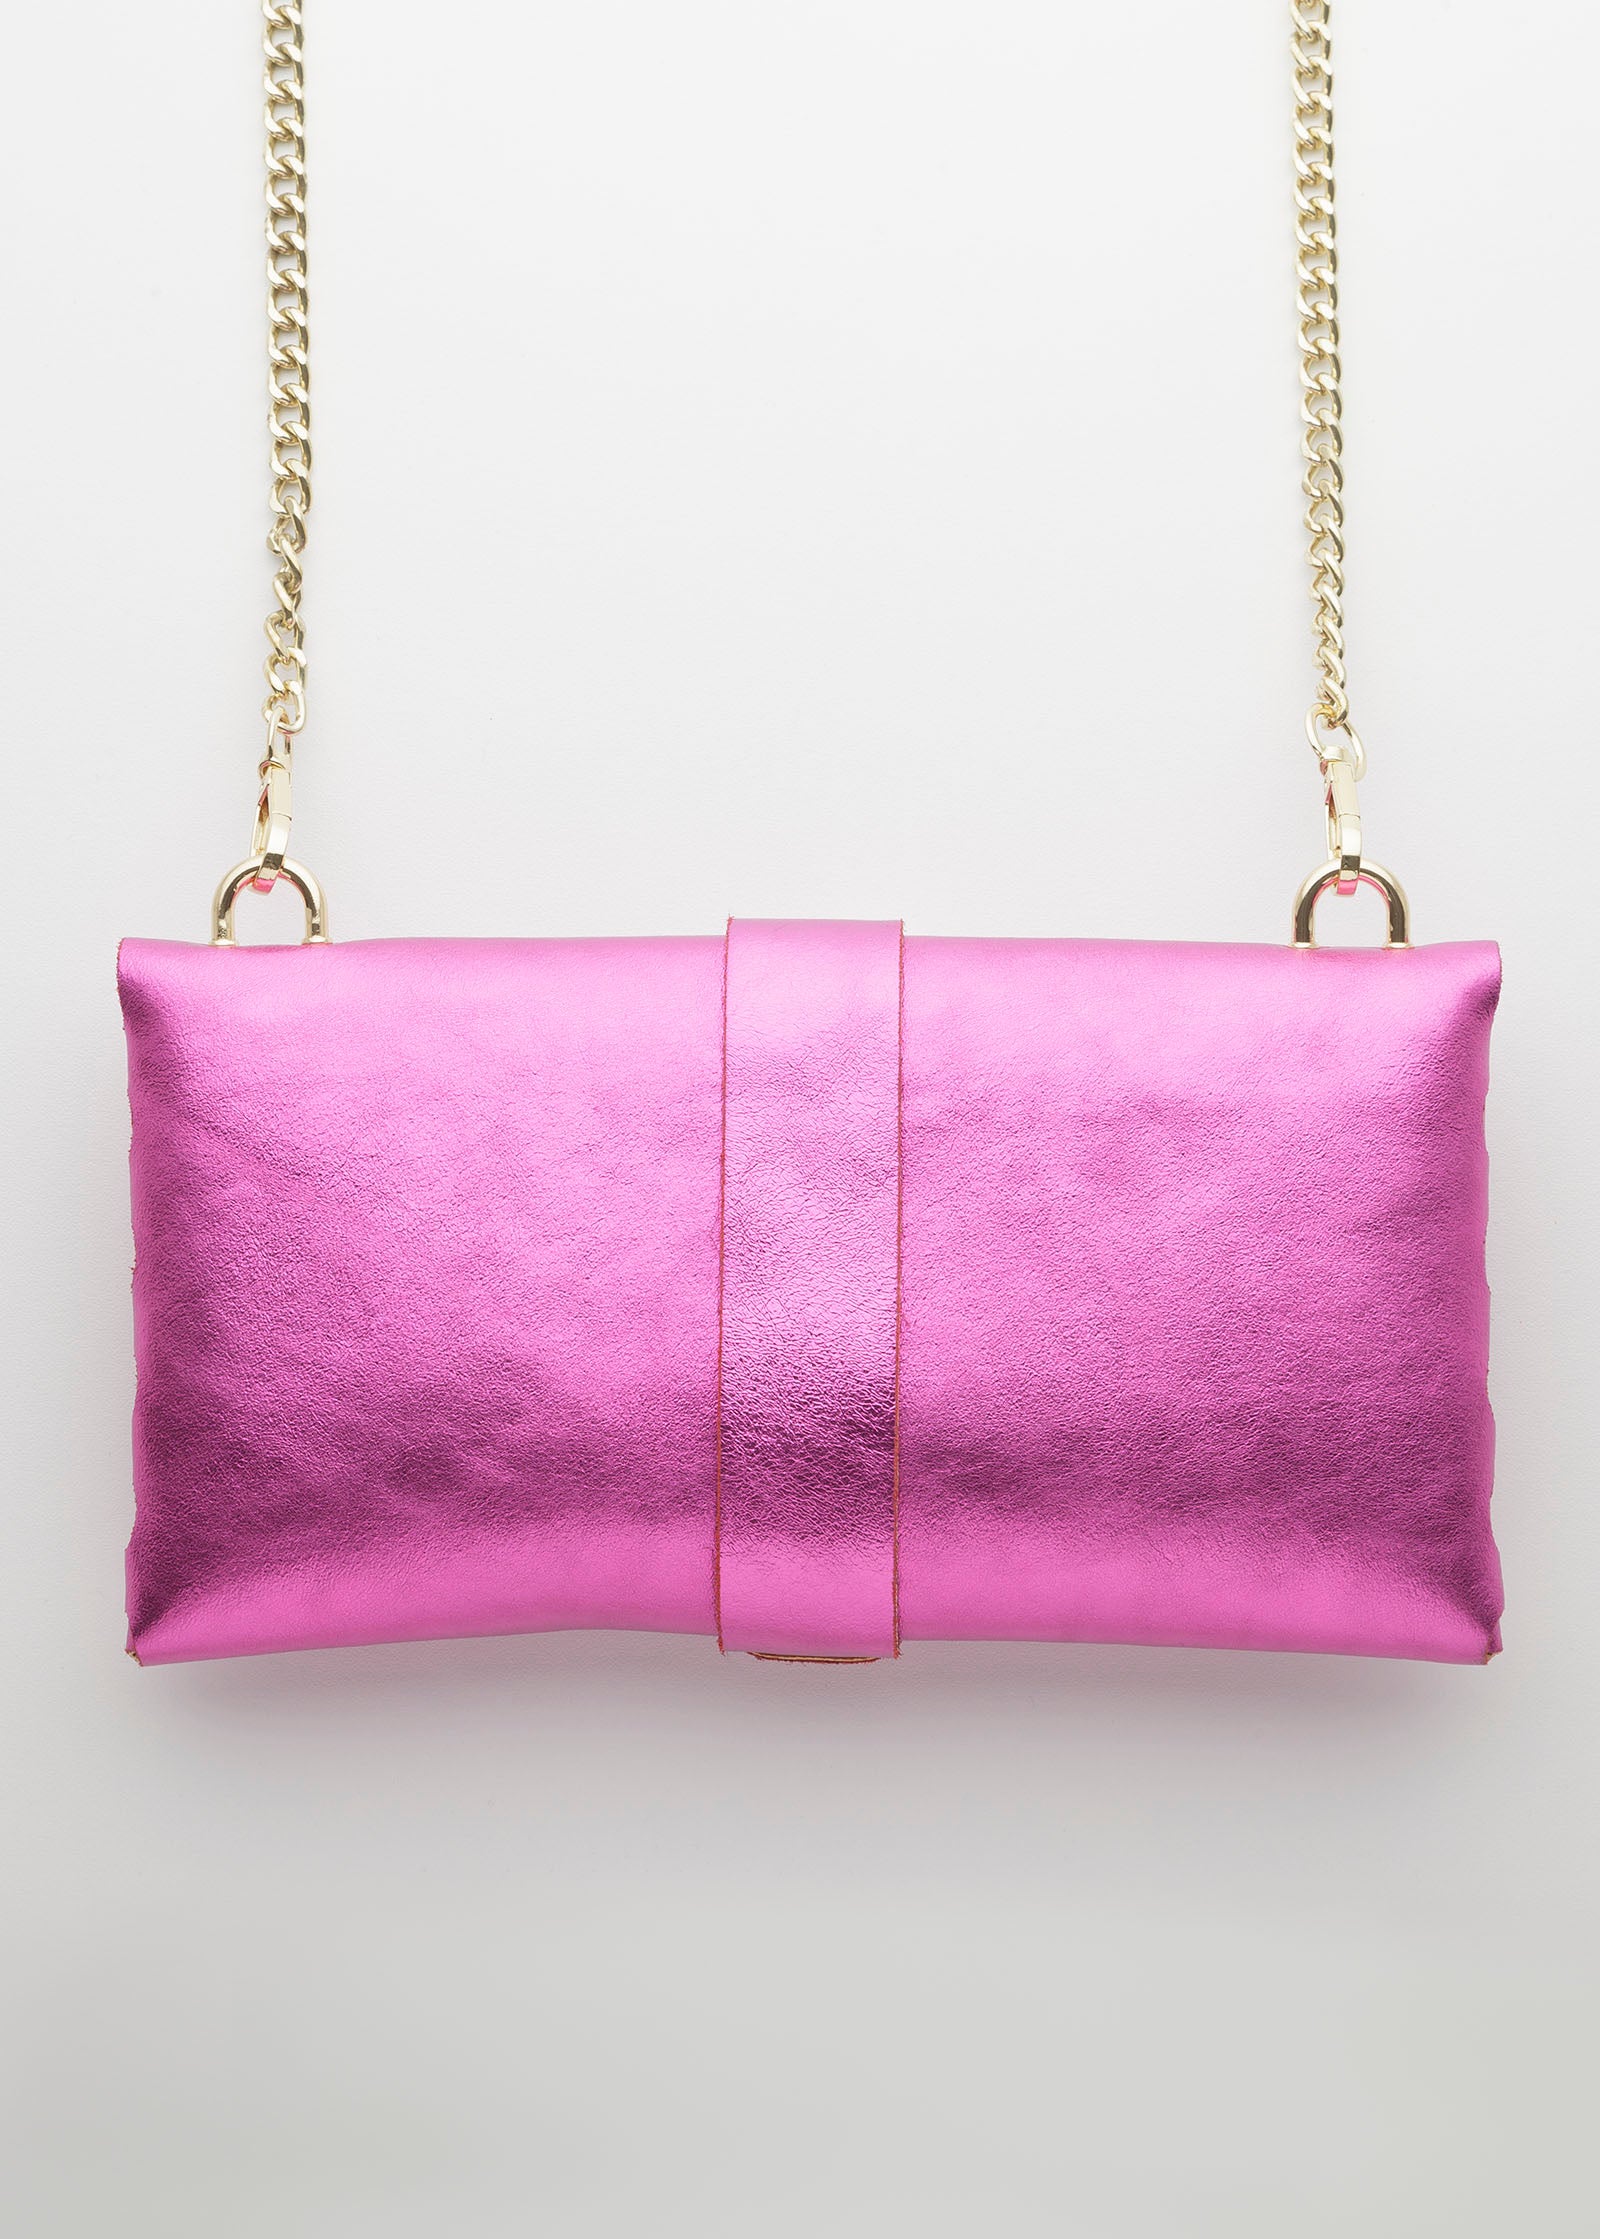 Cassetta Bag | Metallic Pink